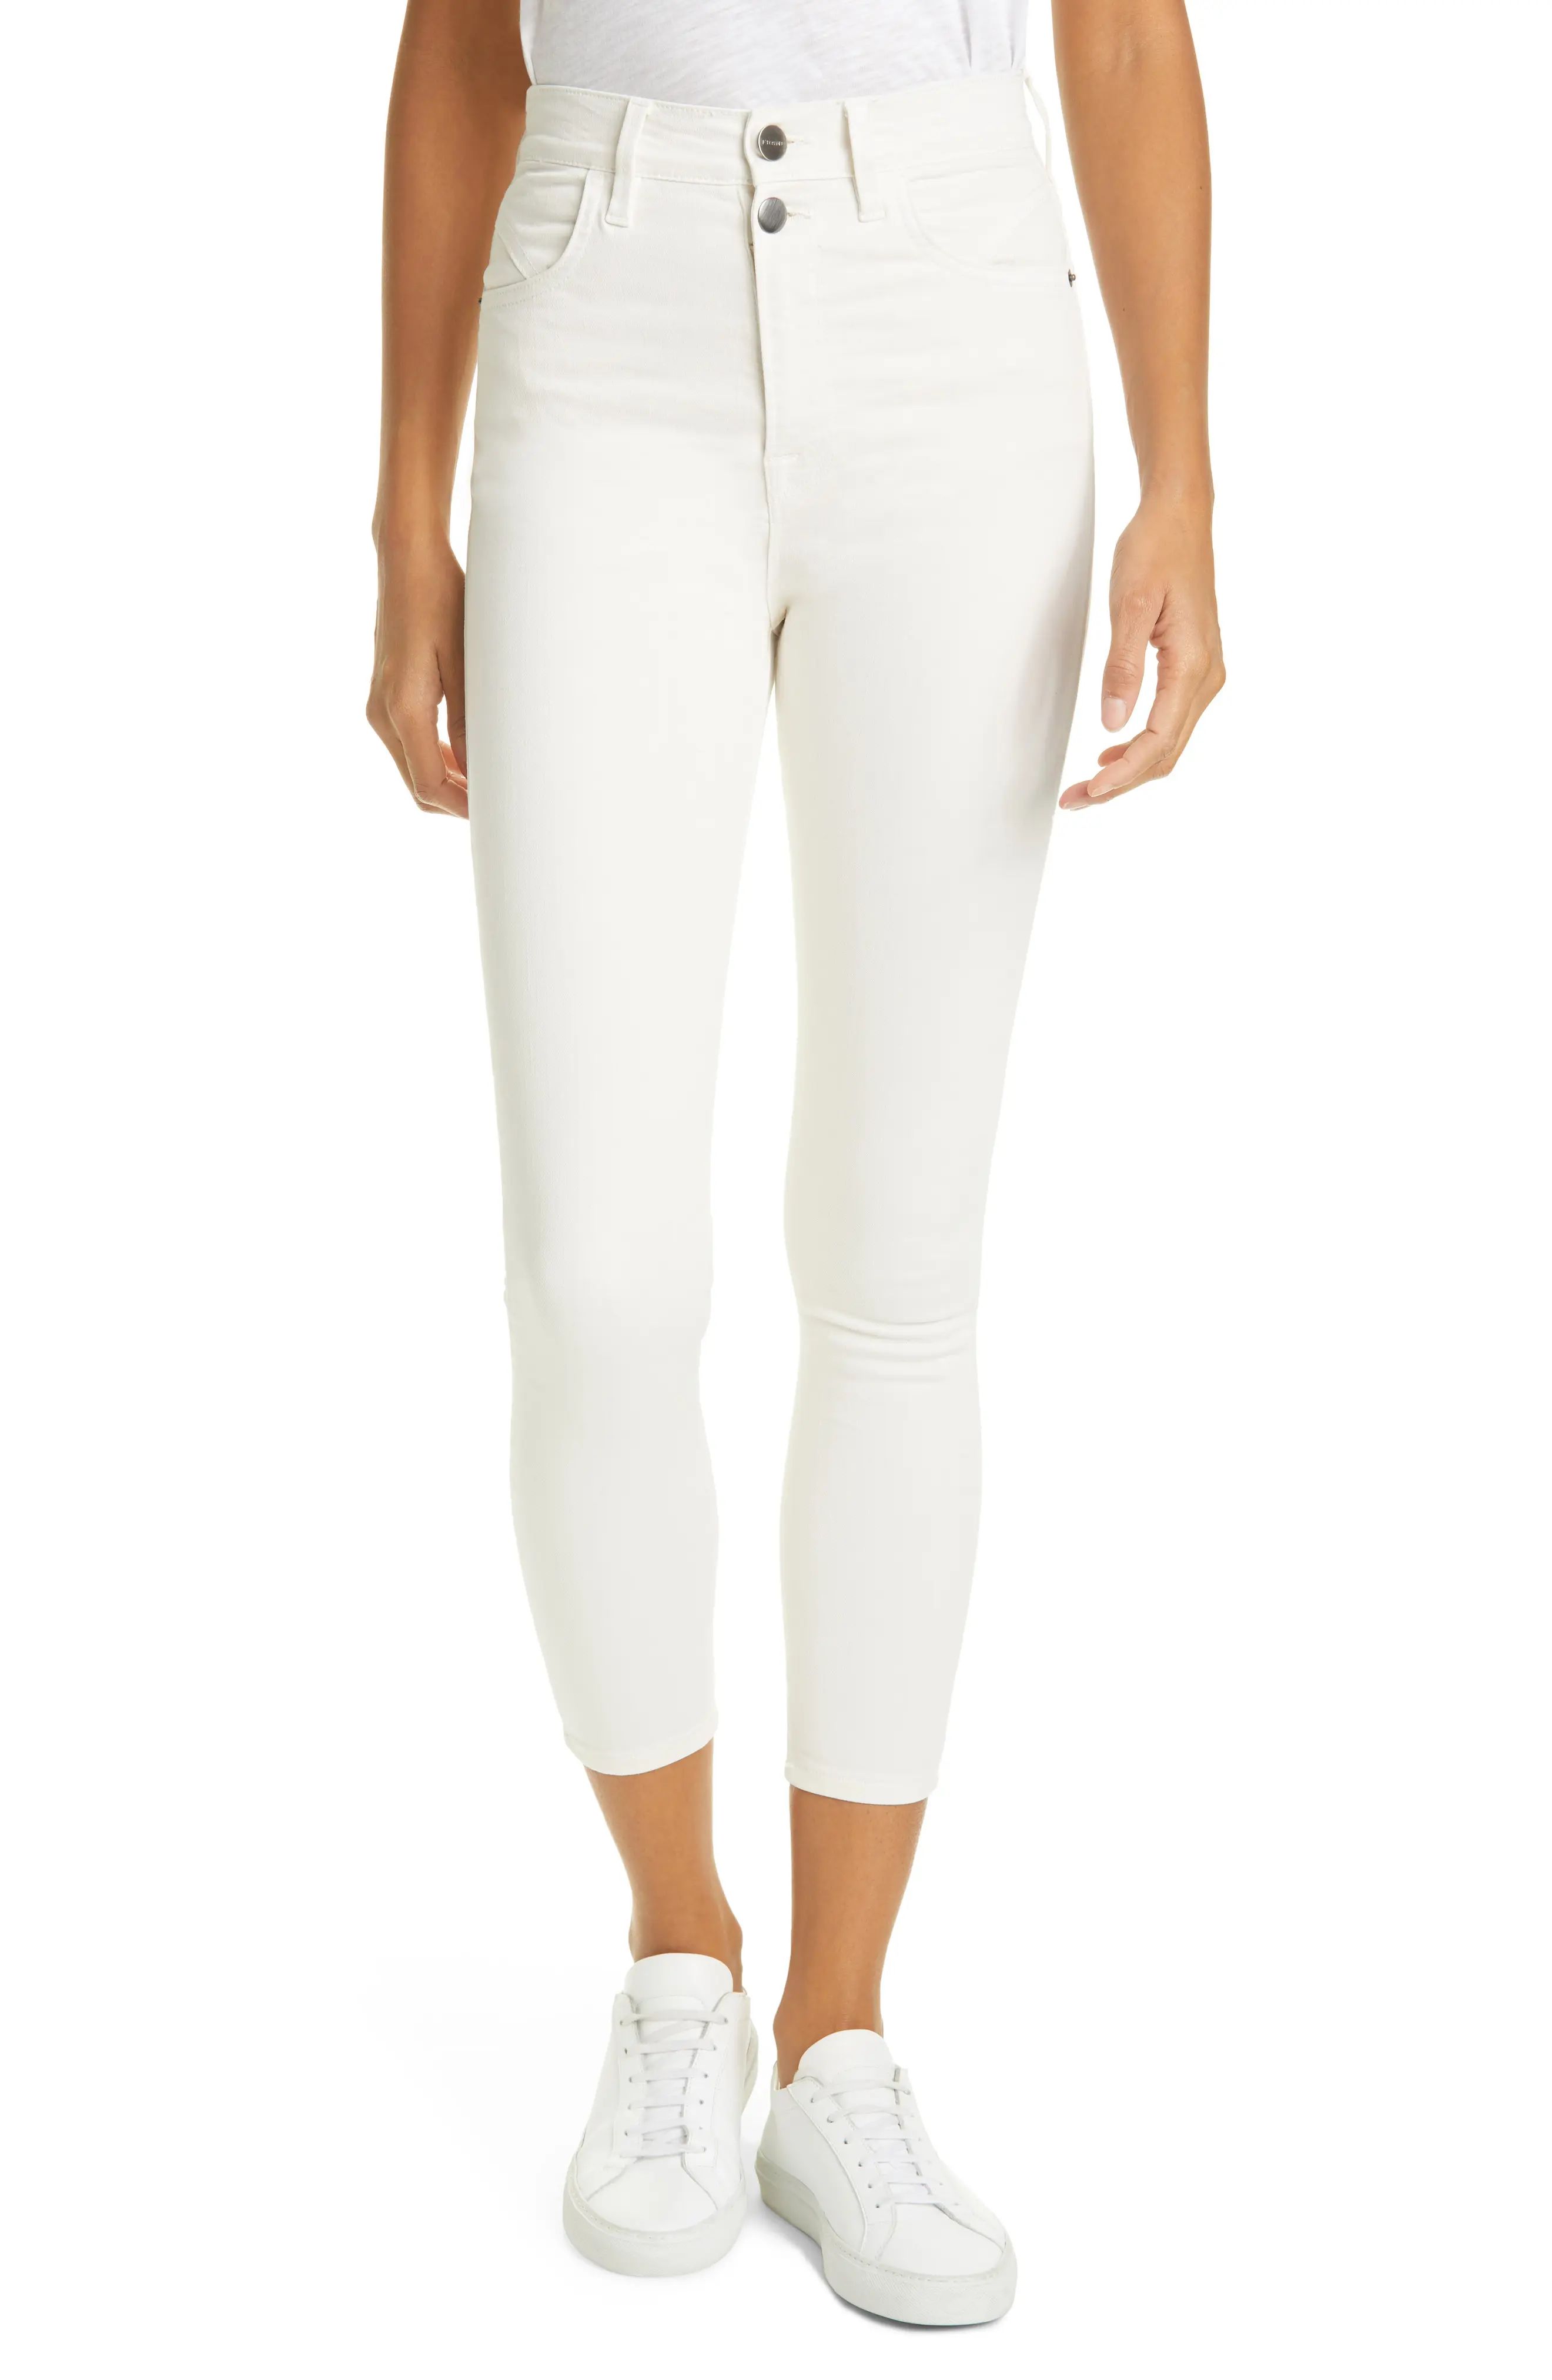 FRAME Ali High Waist Crop Skinny Jeans, Size 32 in Vintage White at Nordstrom | Nordstrom